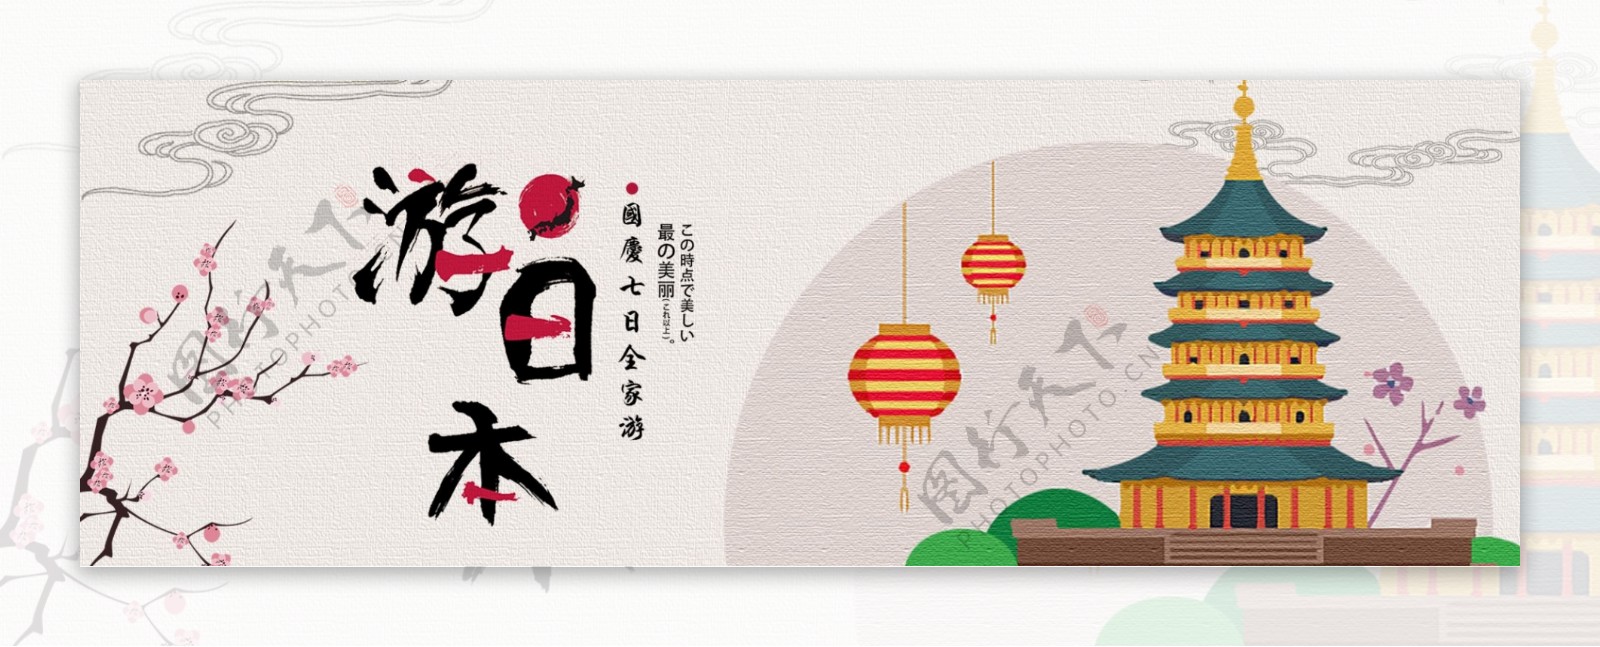 淘宝天猫电商国庆节中秋季日本旅游文艺海报banner模板设计